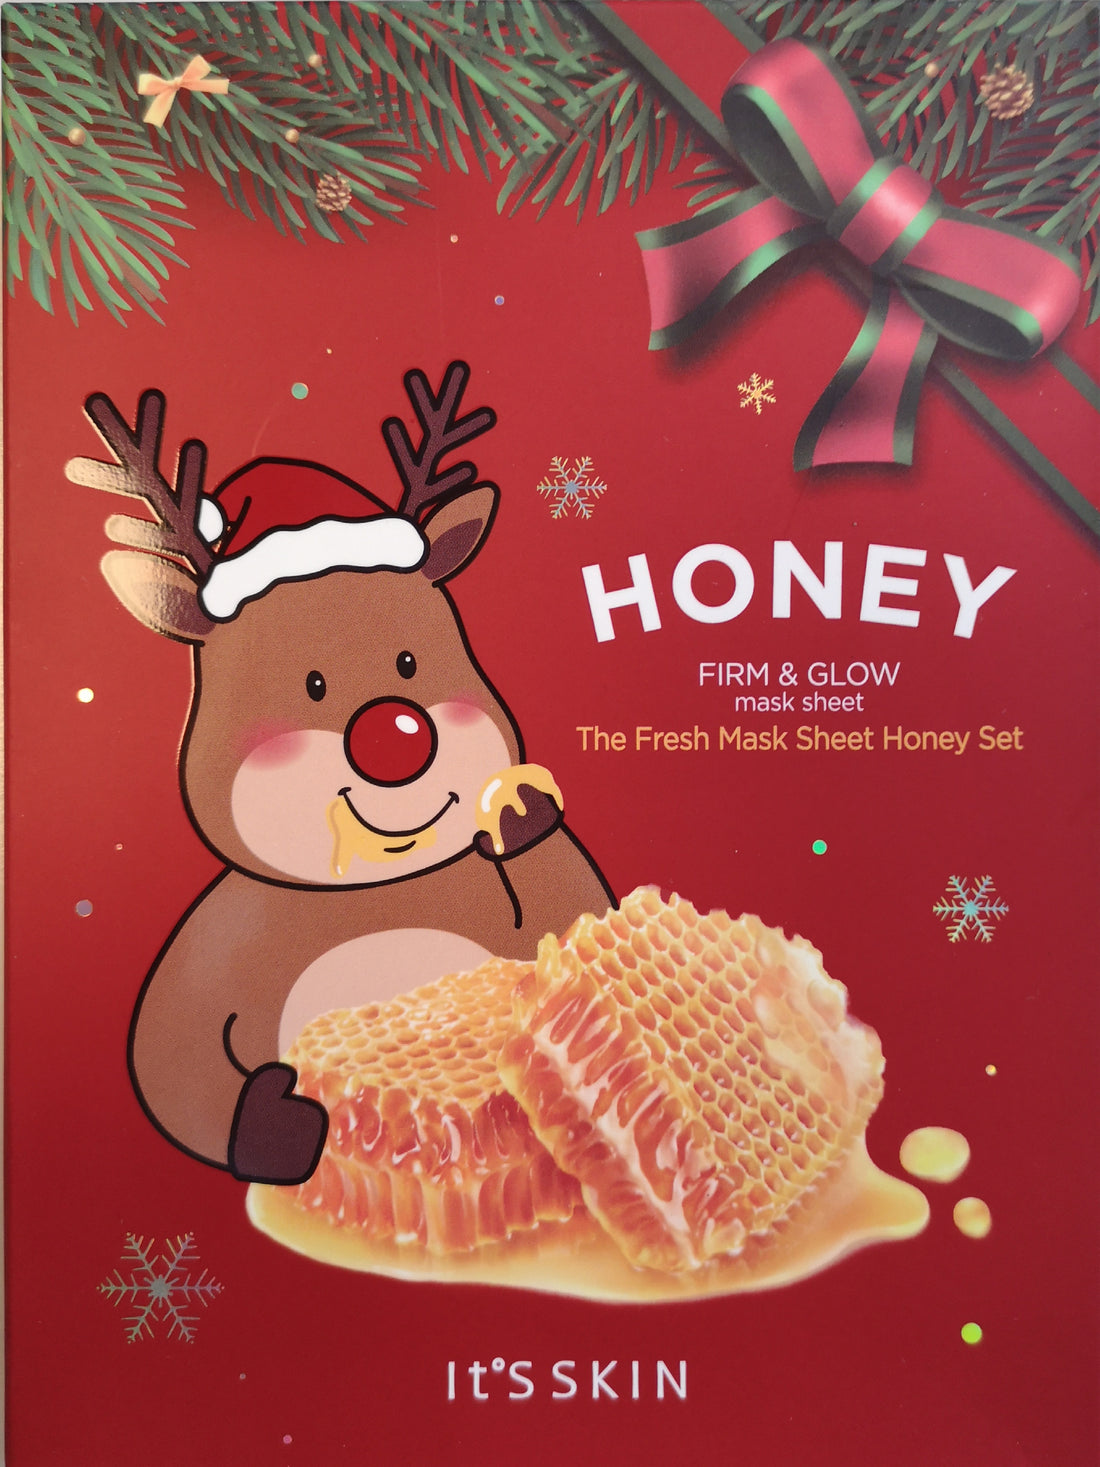 The Fresh Mask Sheet Honey XMAS Set